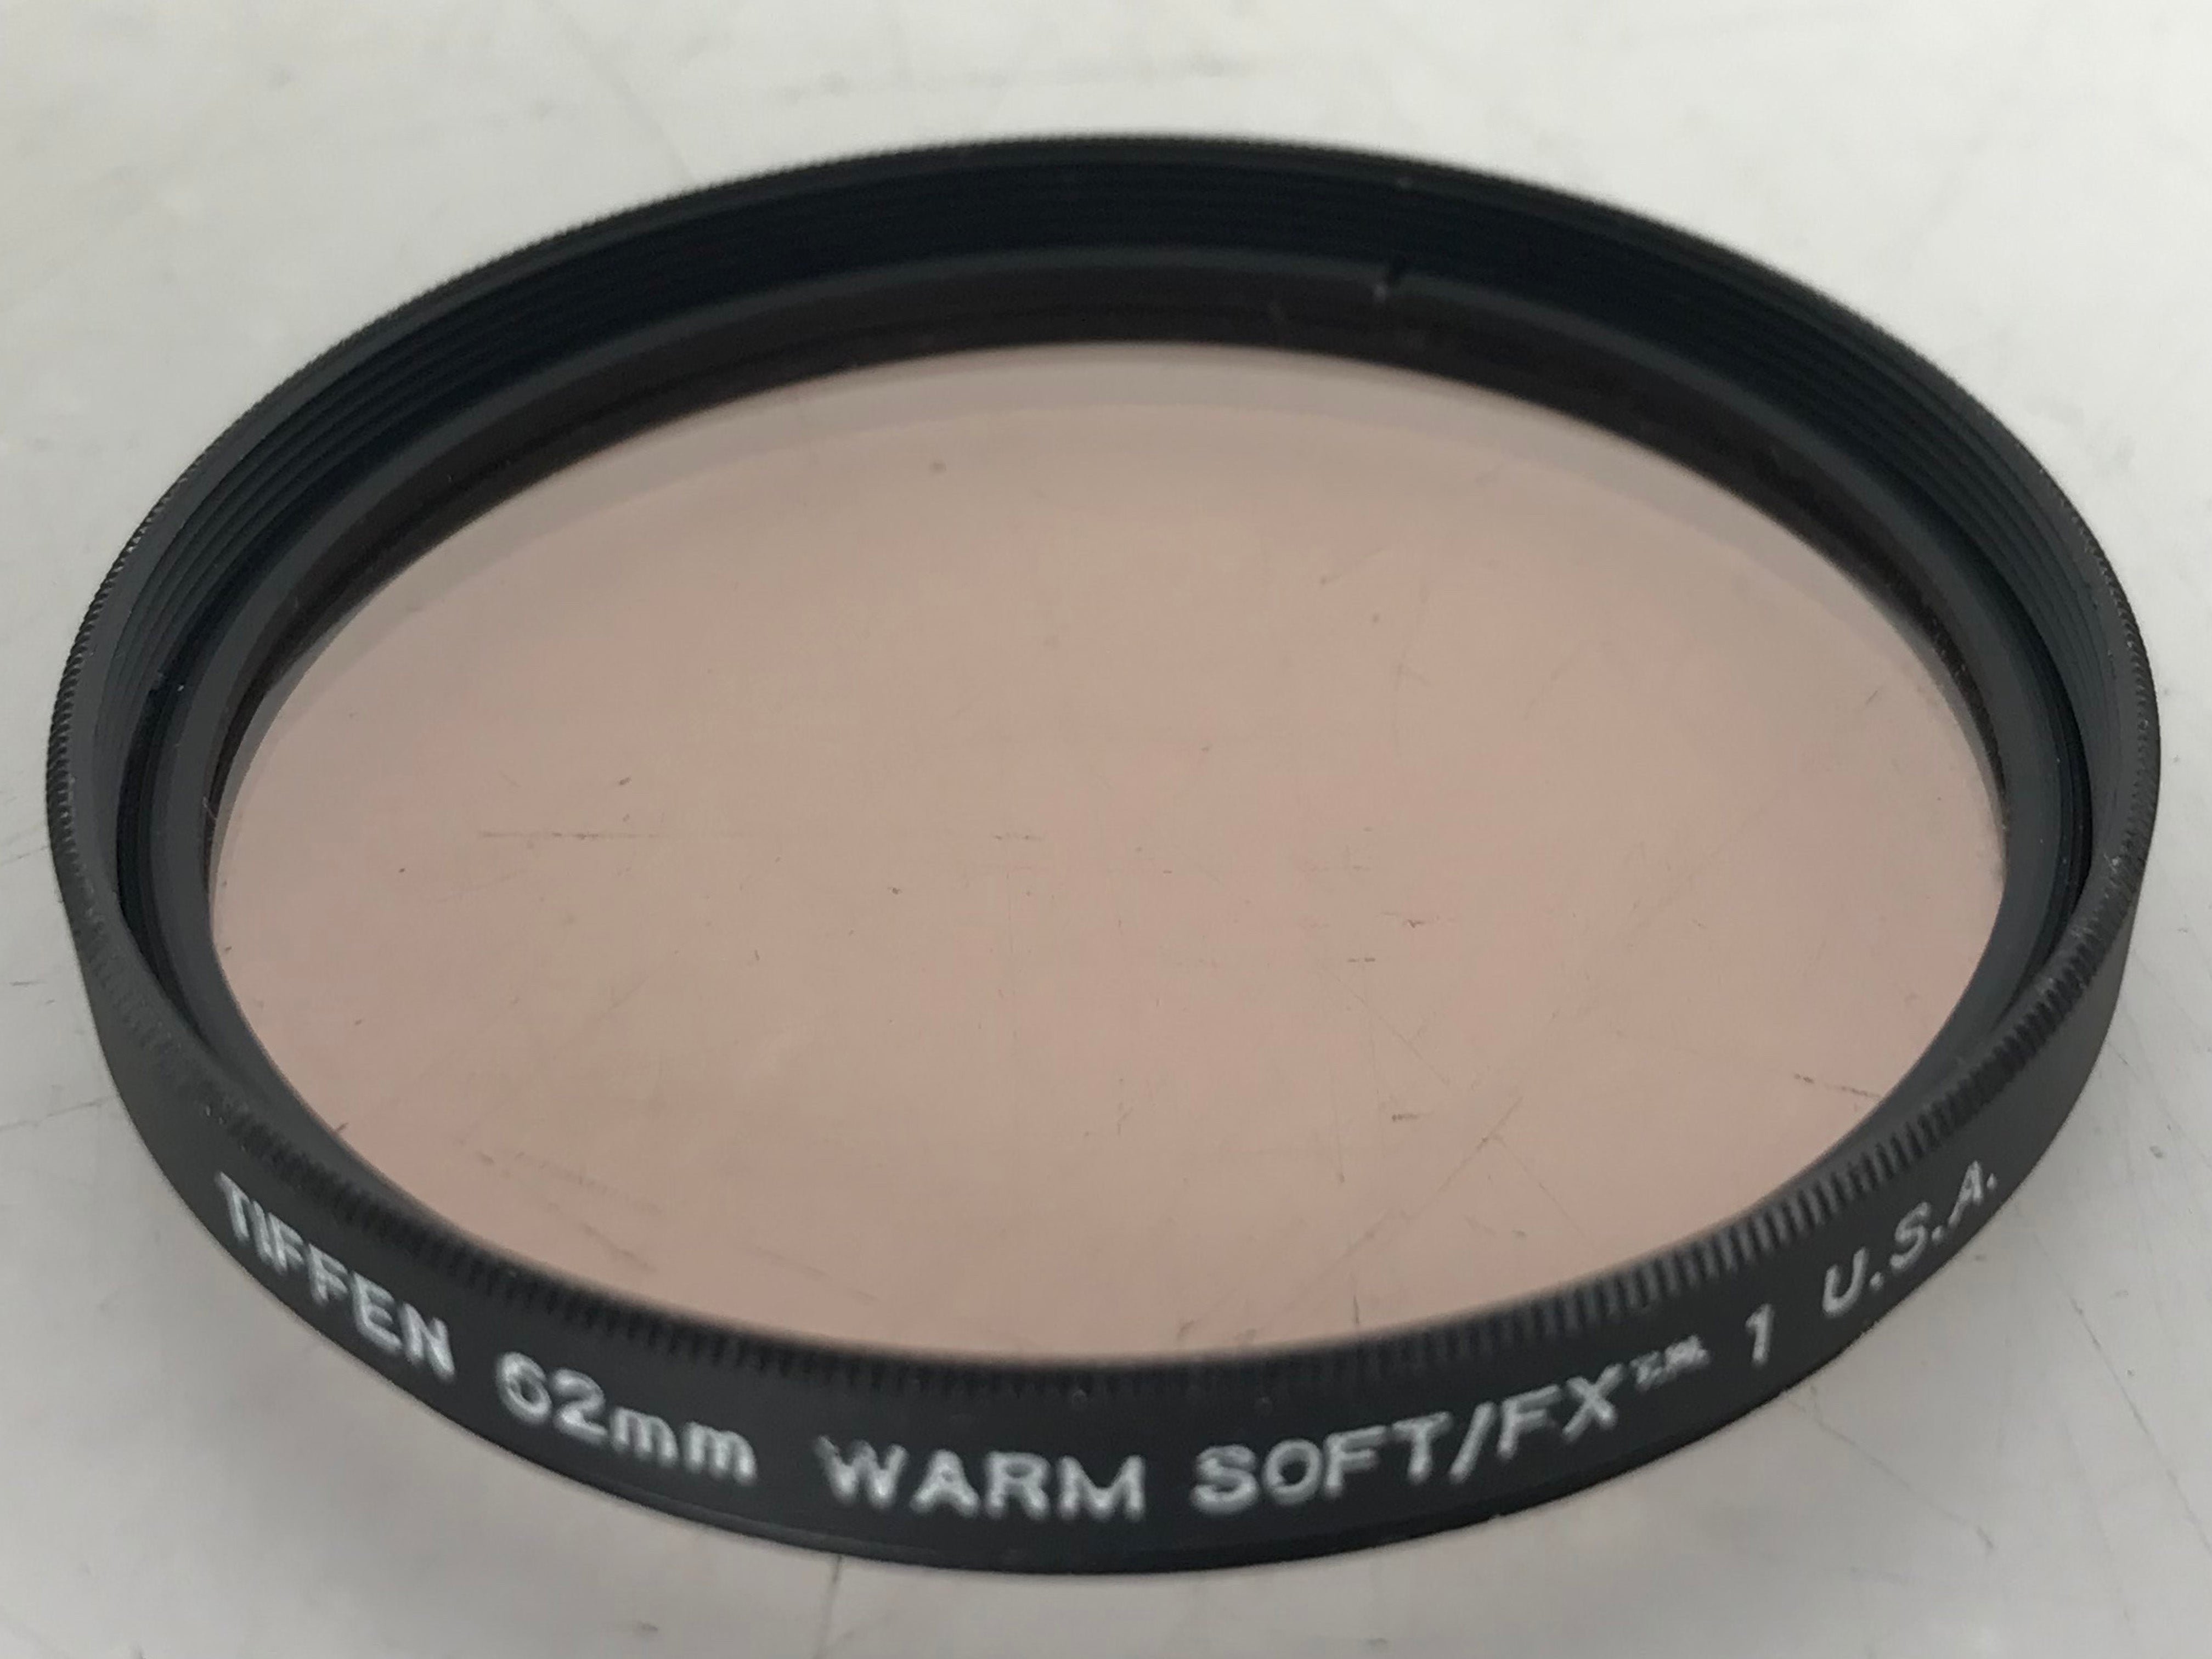 Tiffen 62mm Warm Soft/FX 1 Filter